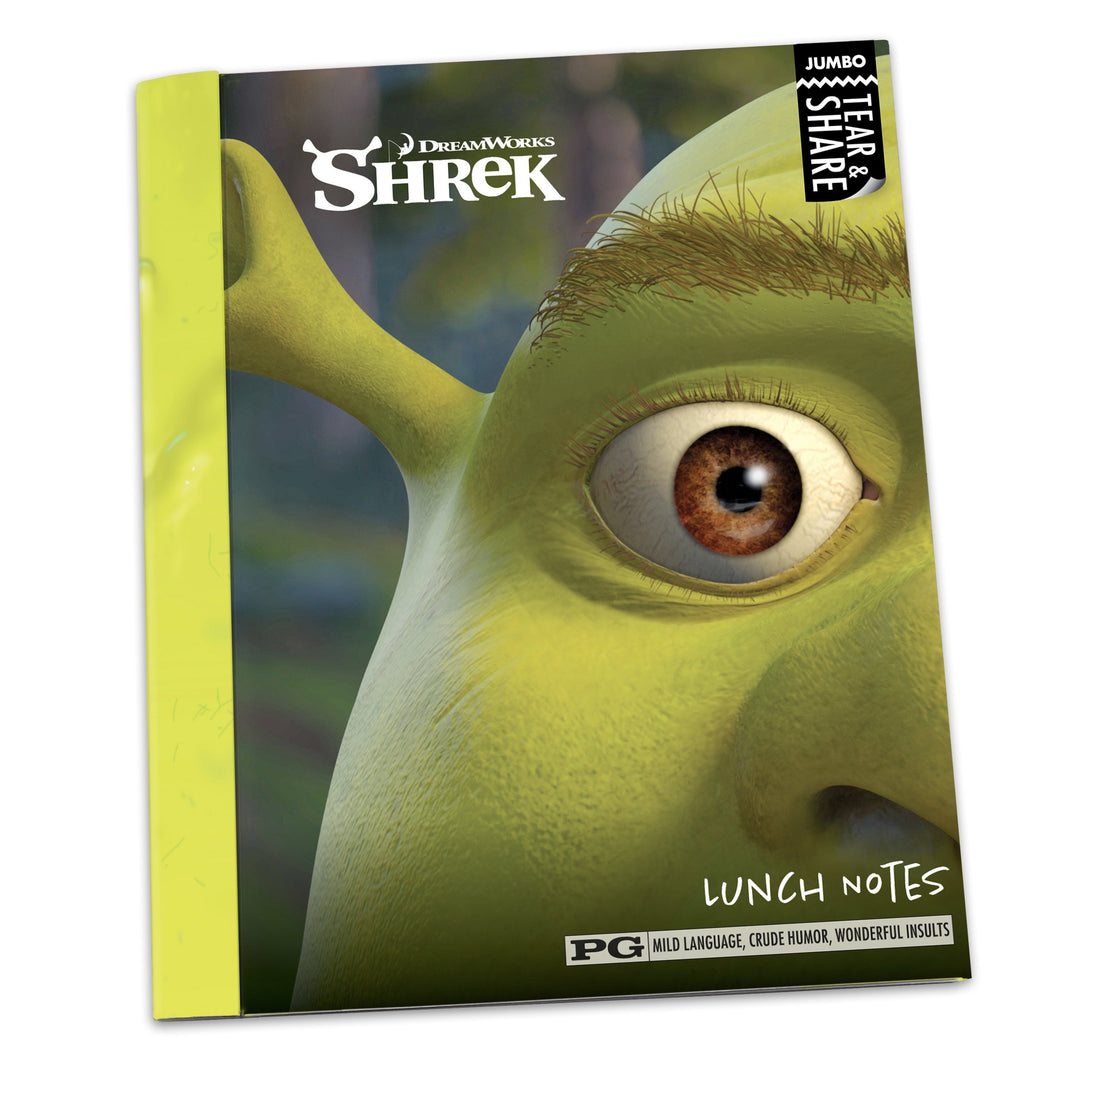 Shrek Jumbo Tear and Share Quote Notes - Official Shrek Merchandise